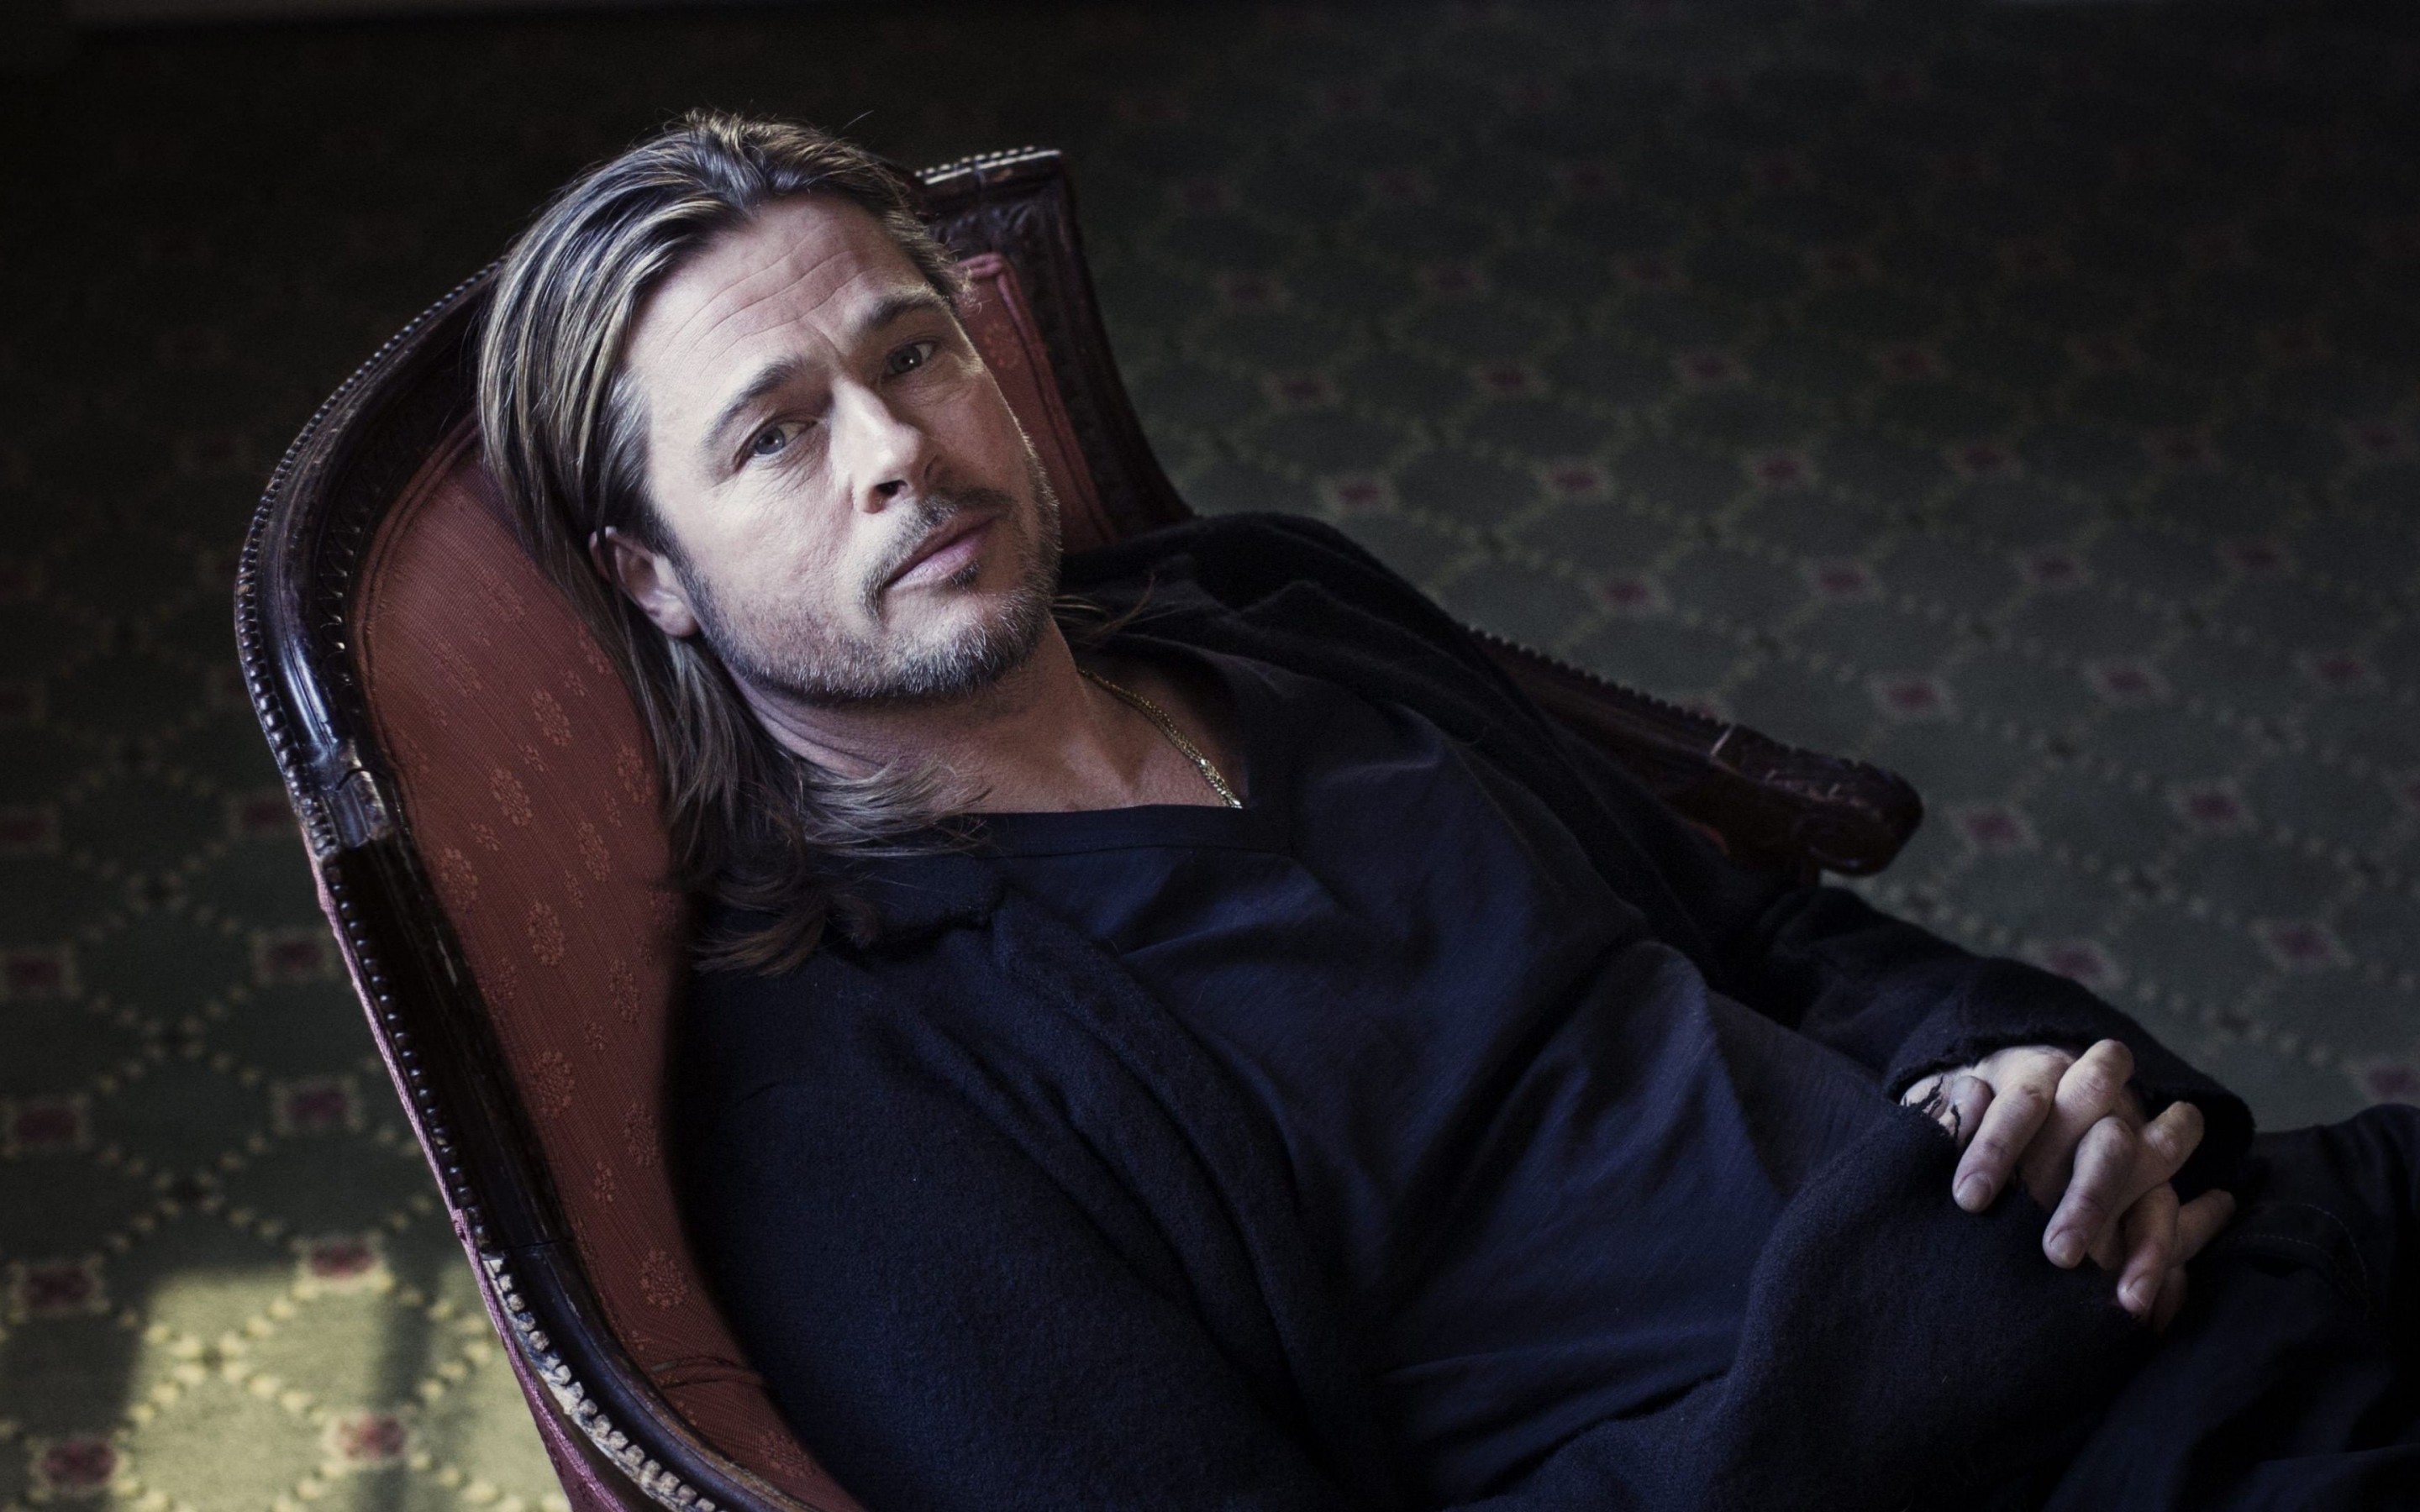 Brad Pitt Sitting On Chair Wallpaper for Desktop 2880x1800